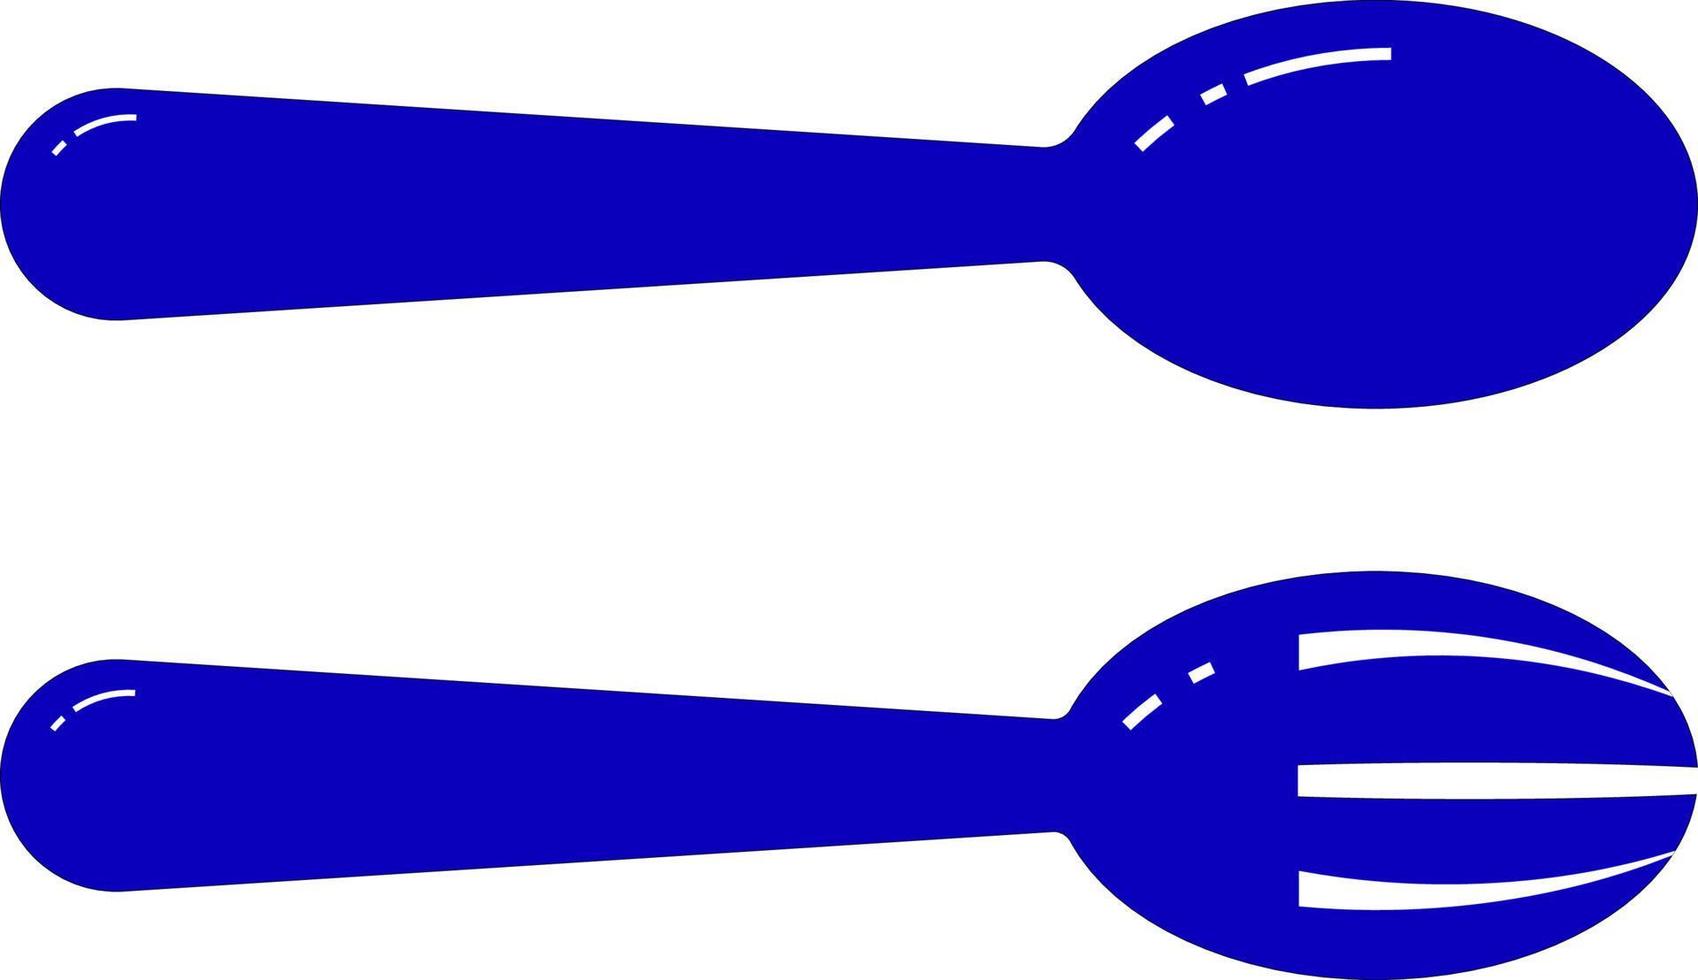 gaffel och sked med blå bottenfärg vektor